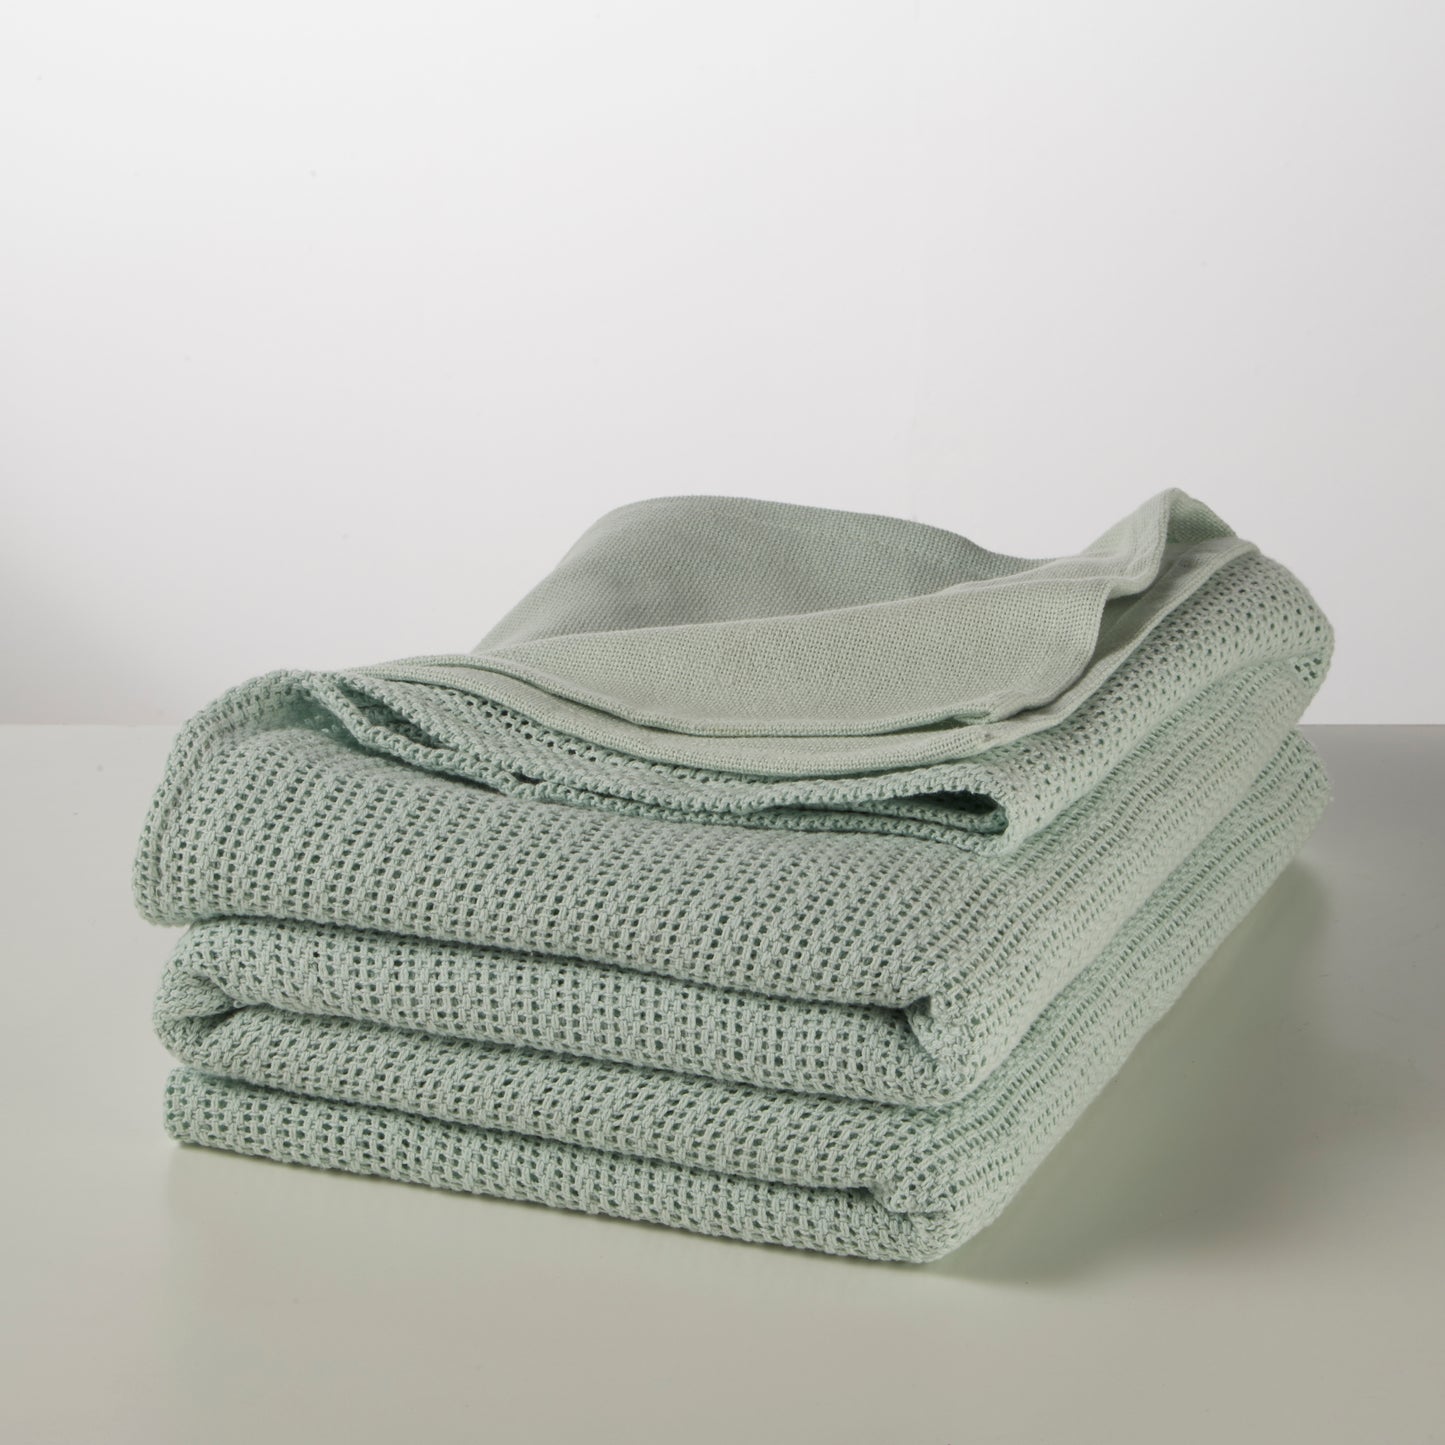 Sleepscene Cellular Blanket in Mint (Various sizes available)